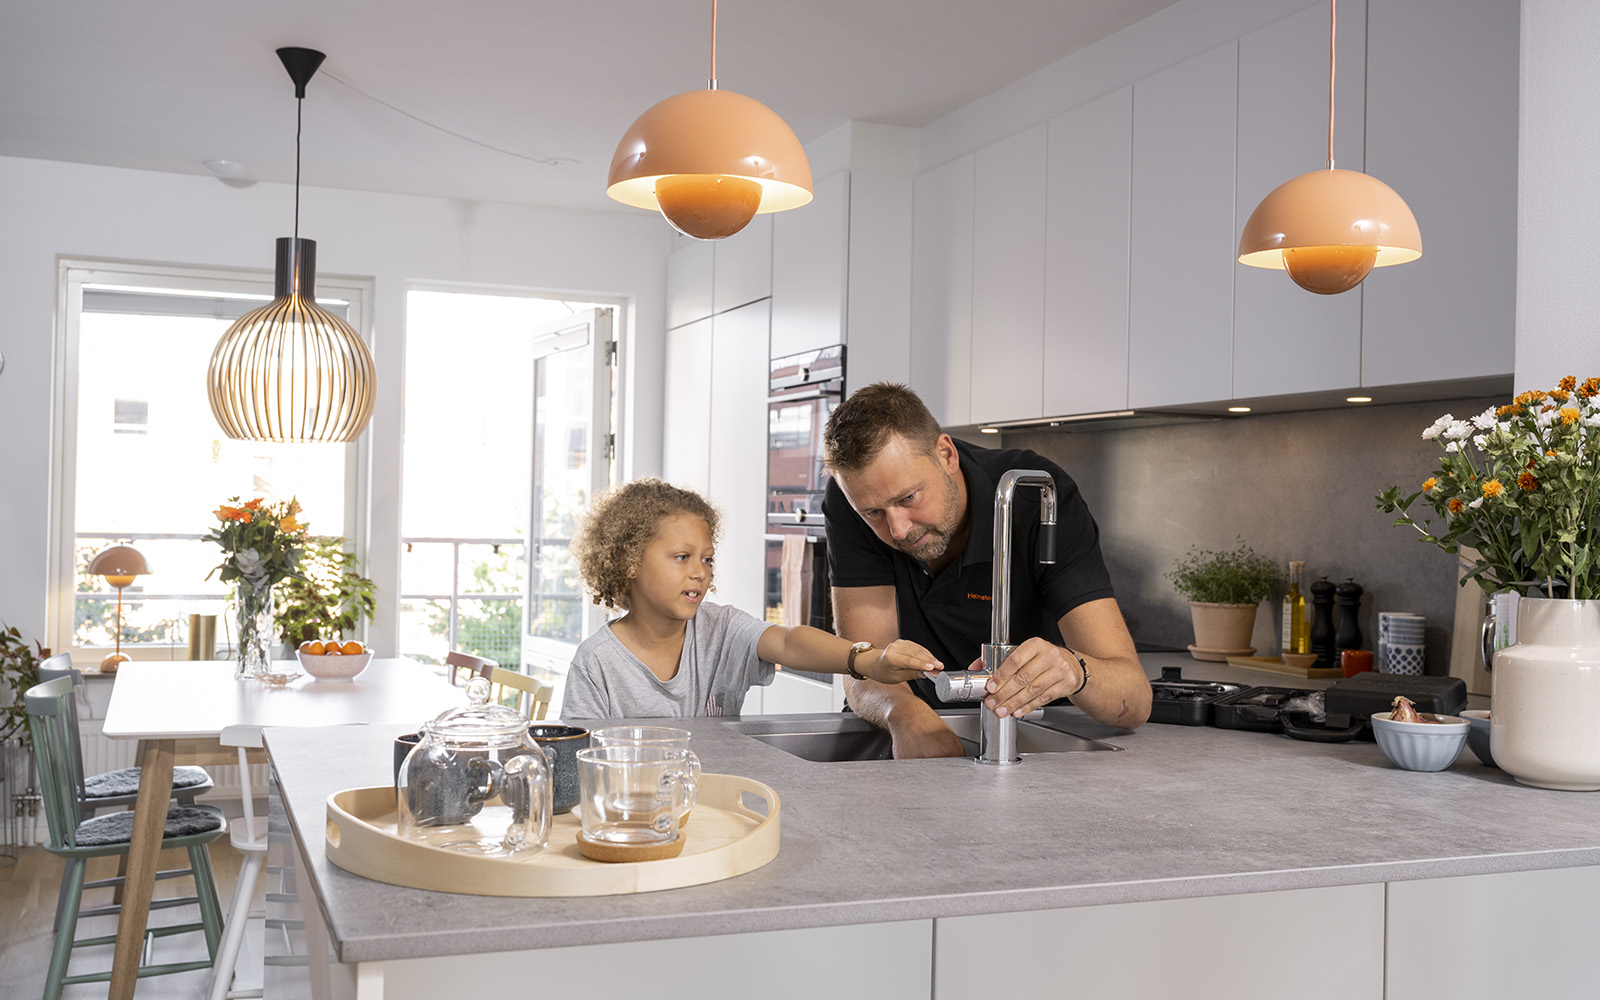 En man med arbetskläder och en pojke står vid en kökskran i köket